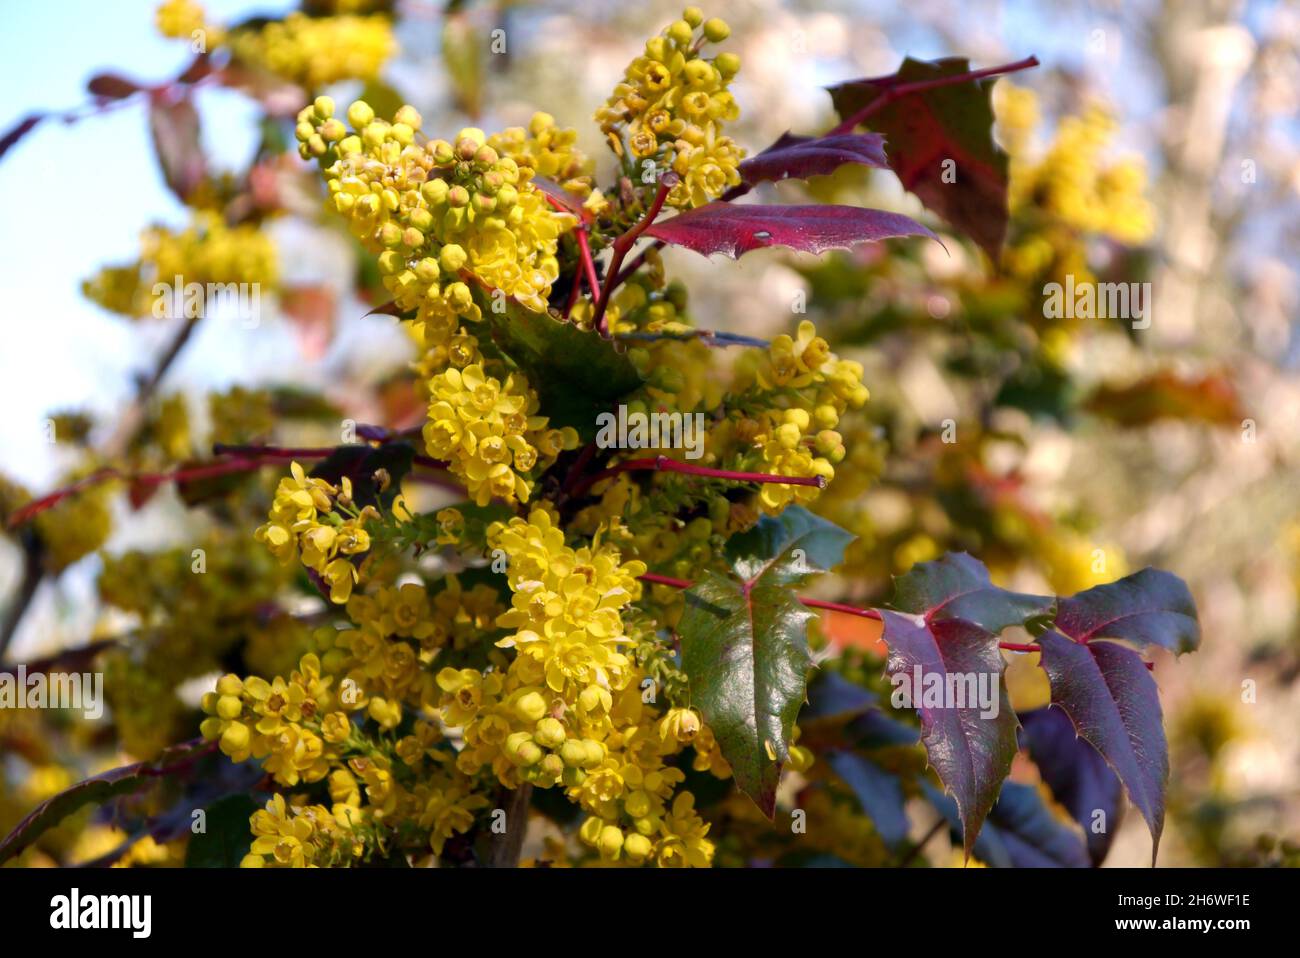 Yellow Clusters of Mahonia x Wagneri 'Pinnacle' (Oregon Grape) Blumen, die an einer Grenze im RHS Garden Harlow Carr, Harrogate, Yorkshire, angebaut werden. England, Großbritannien. Stockfoto